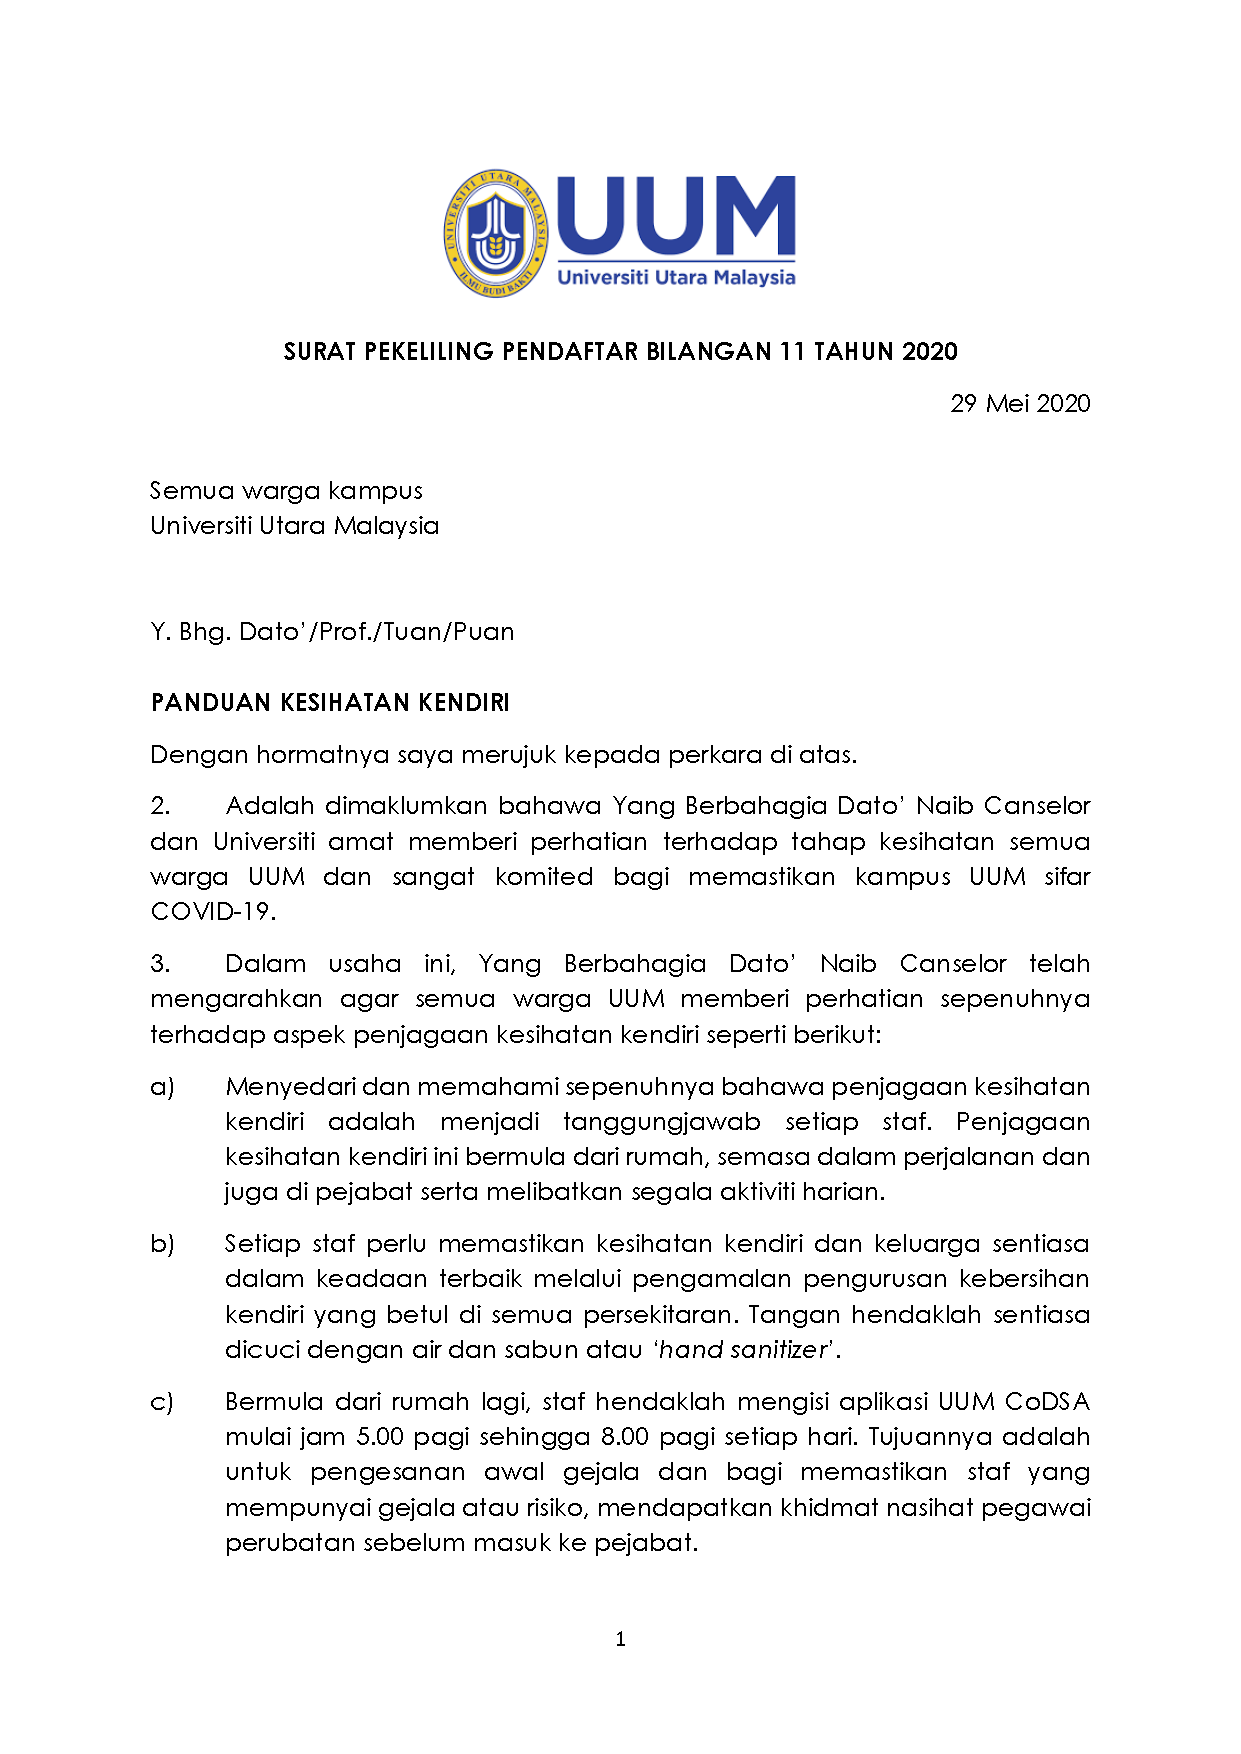 Surat Pekeliling Akauntan Negara Malaysia Bilangan 2 Tahun 2018